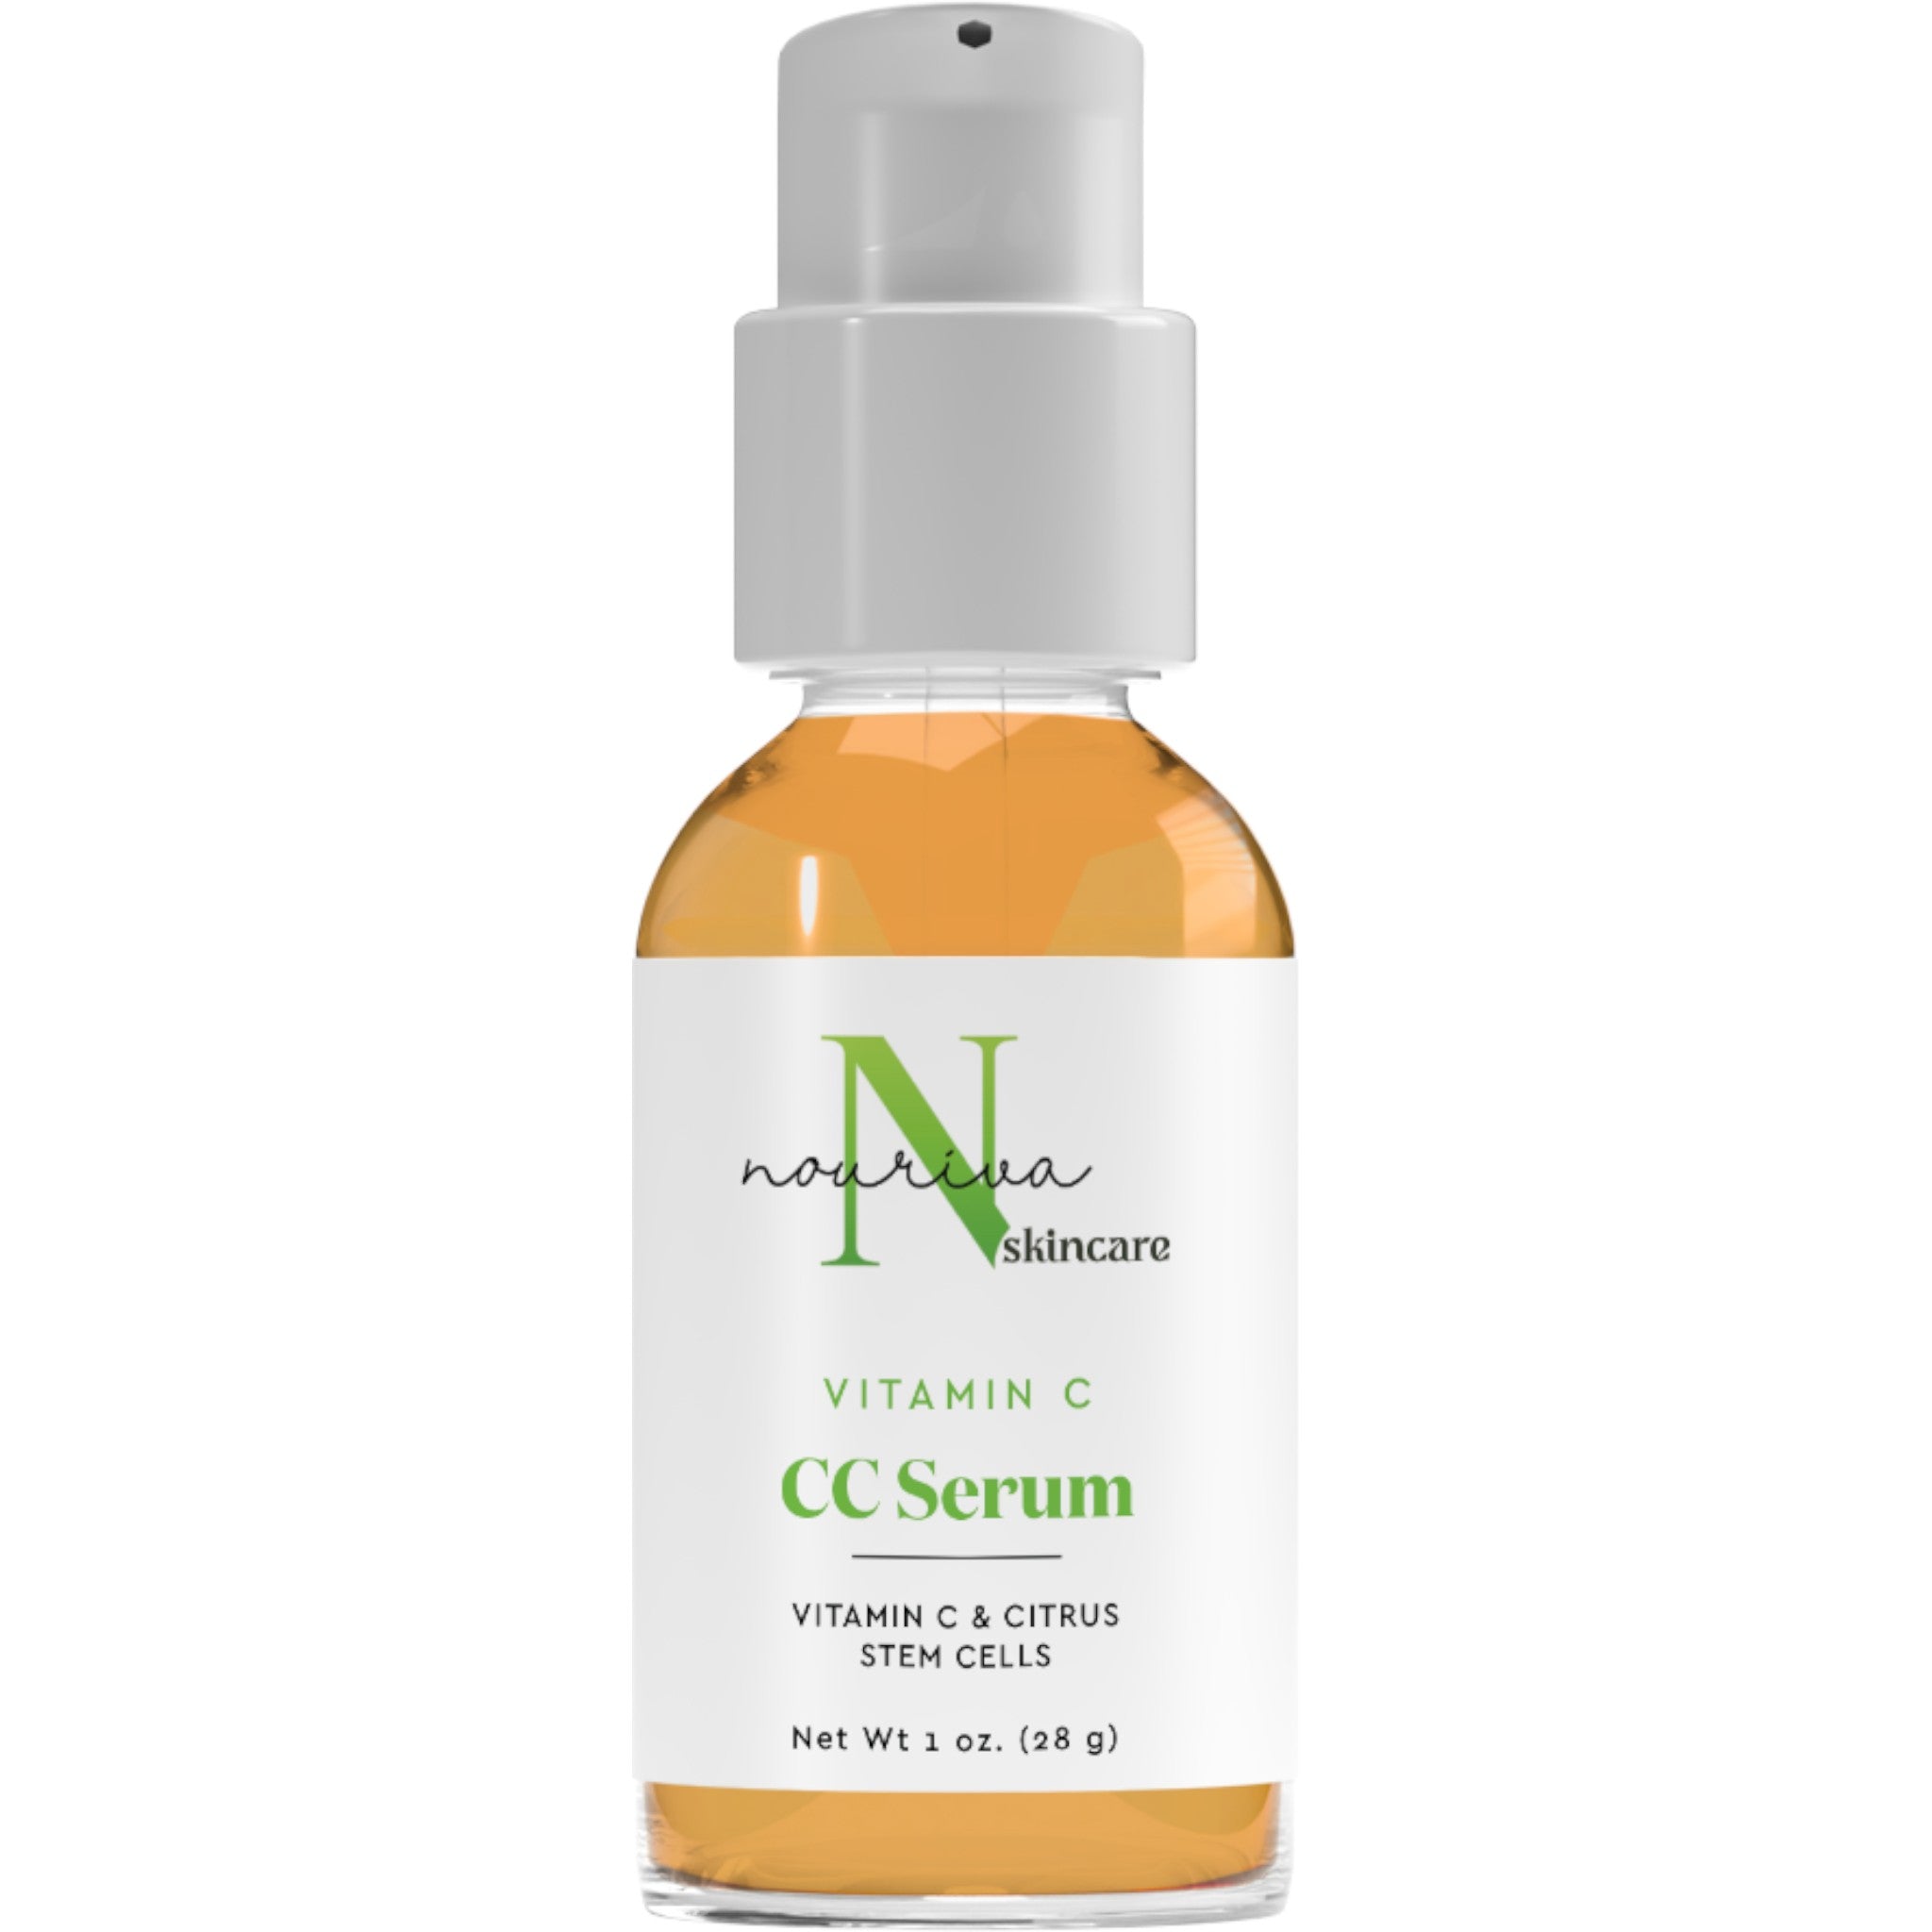 CC Serum with Vitamin C